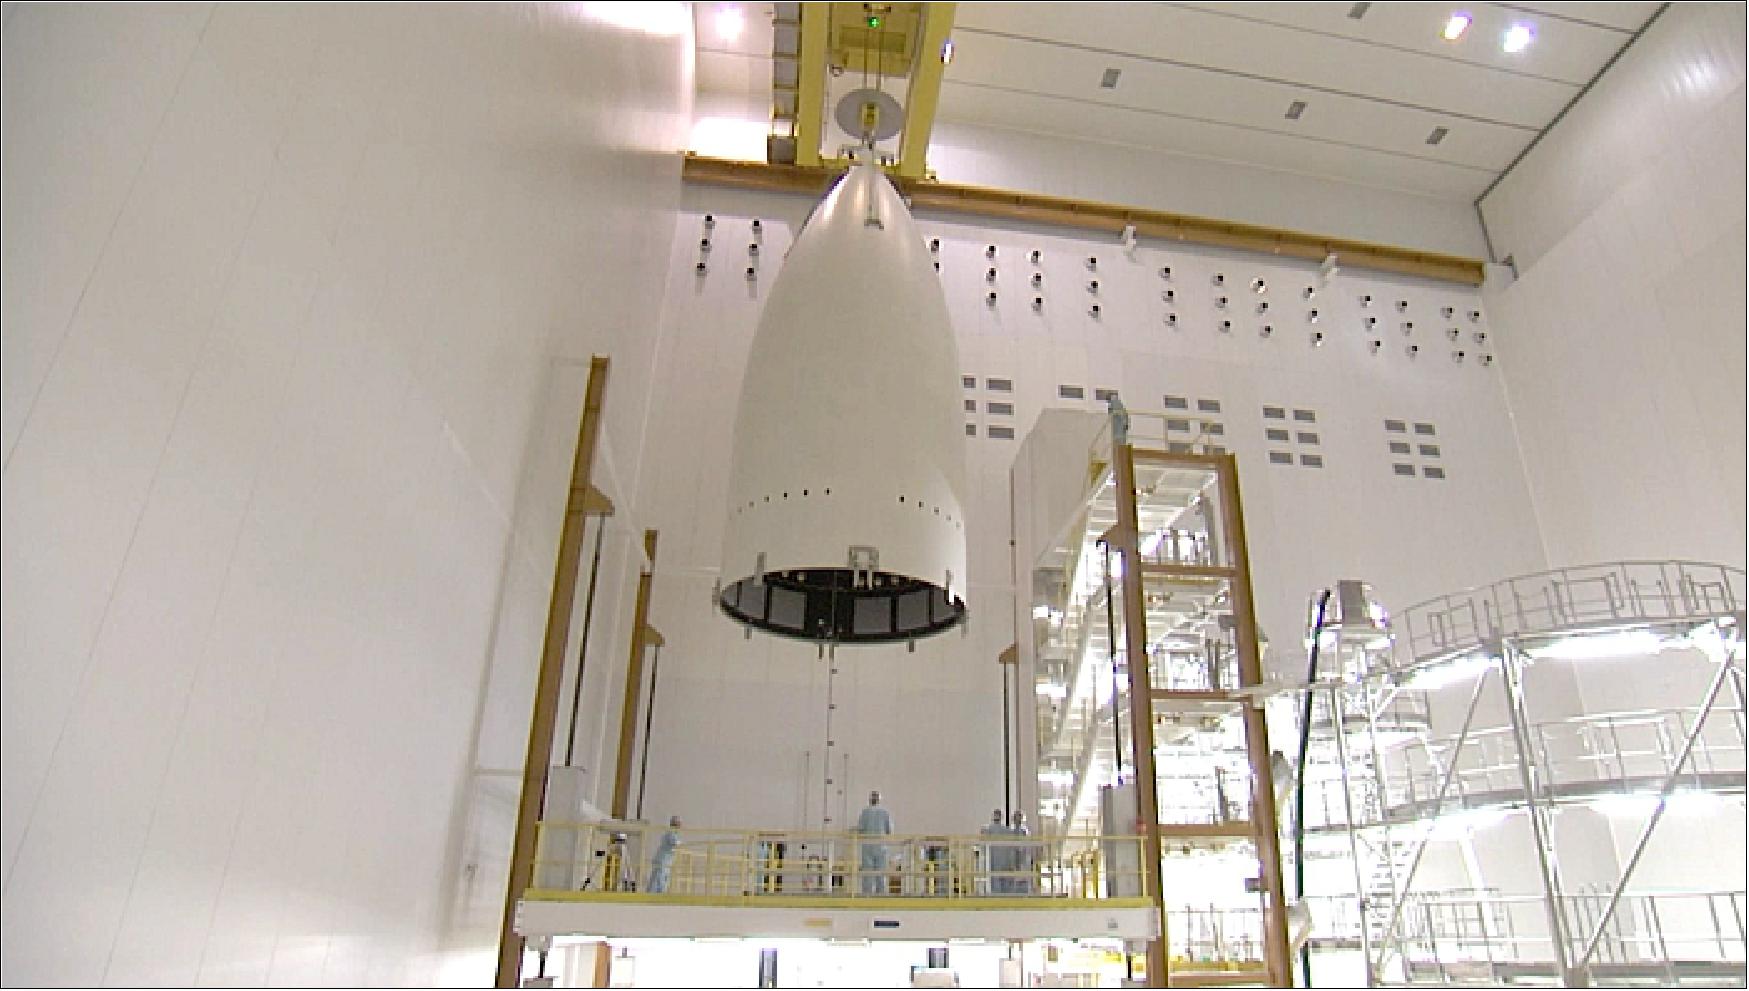 Figure 9: Four-panel fairing for Ariane 5 (image credit: ESA)